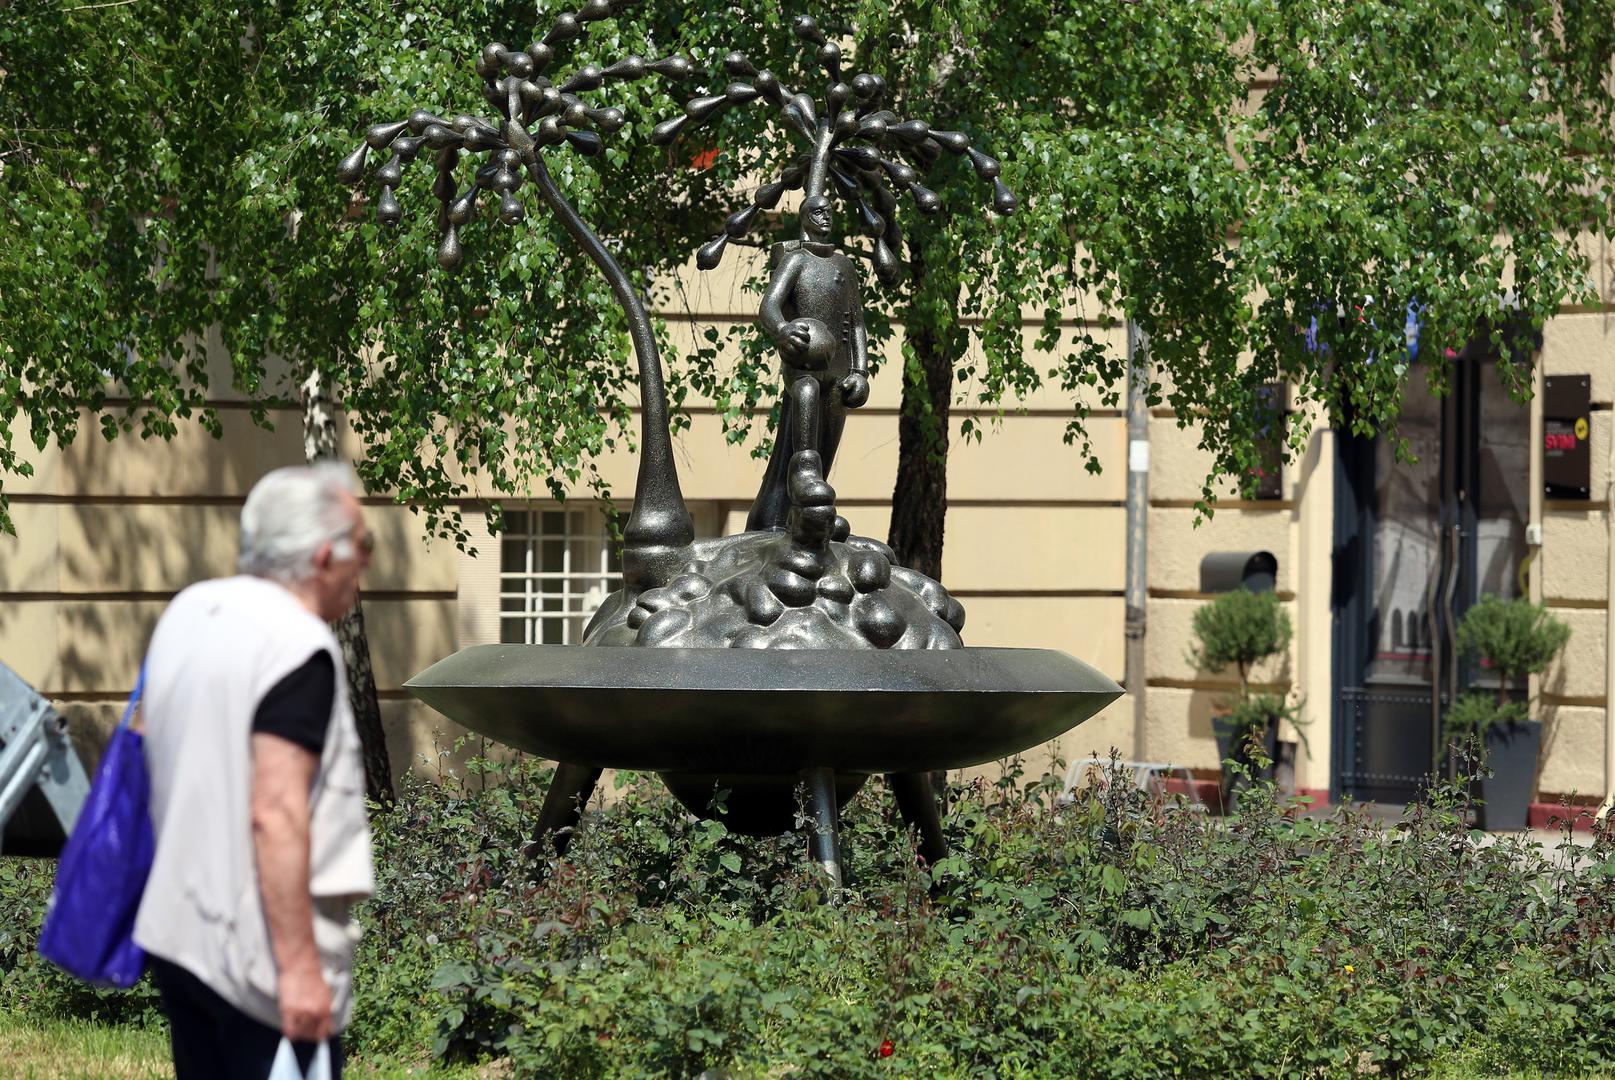 “Dvije palme na otoku sreće” Ivana Fijolića naziv je skulpture koja stoji u parku. Fijolić je zapravo portretirao kipara Ratka Petrića